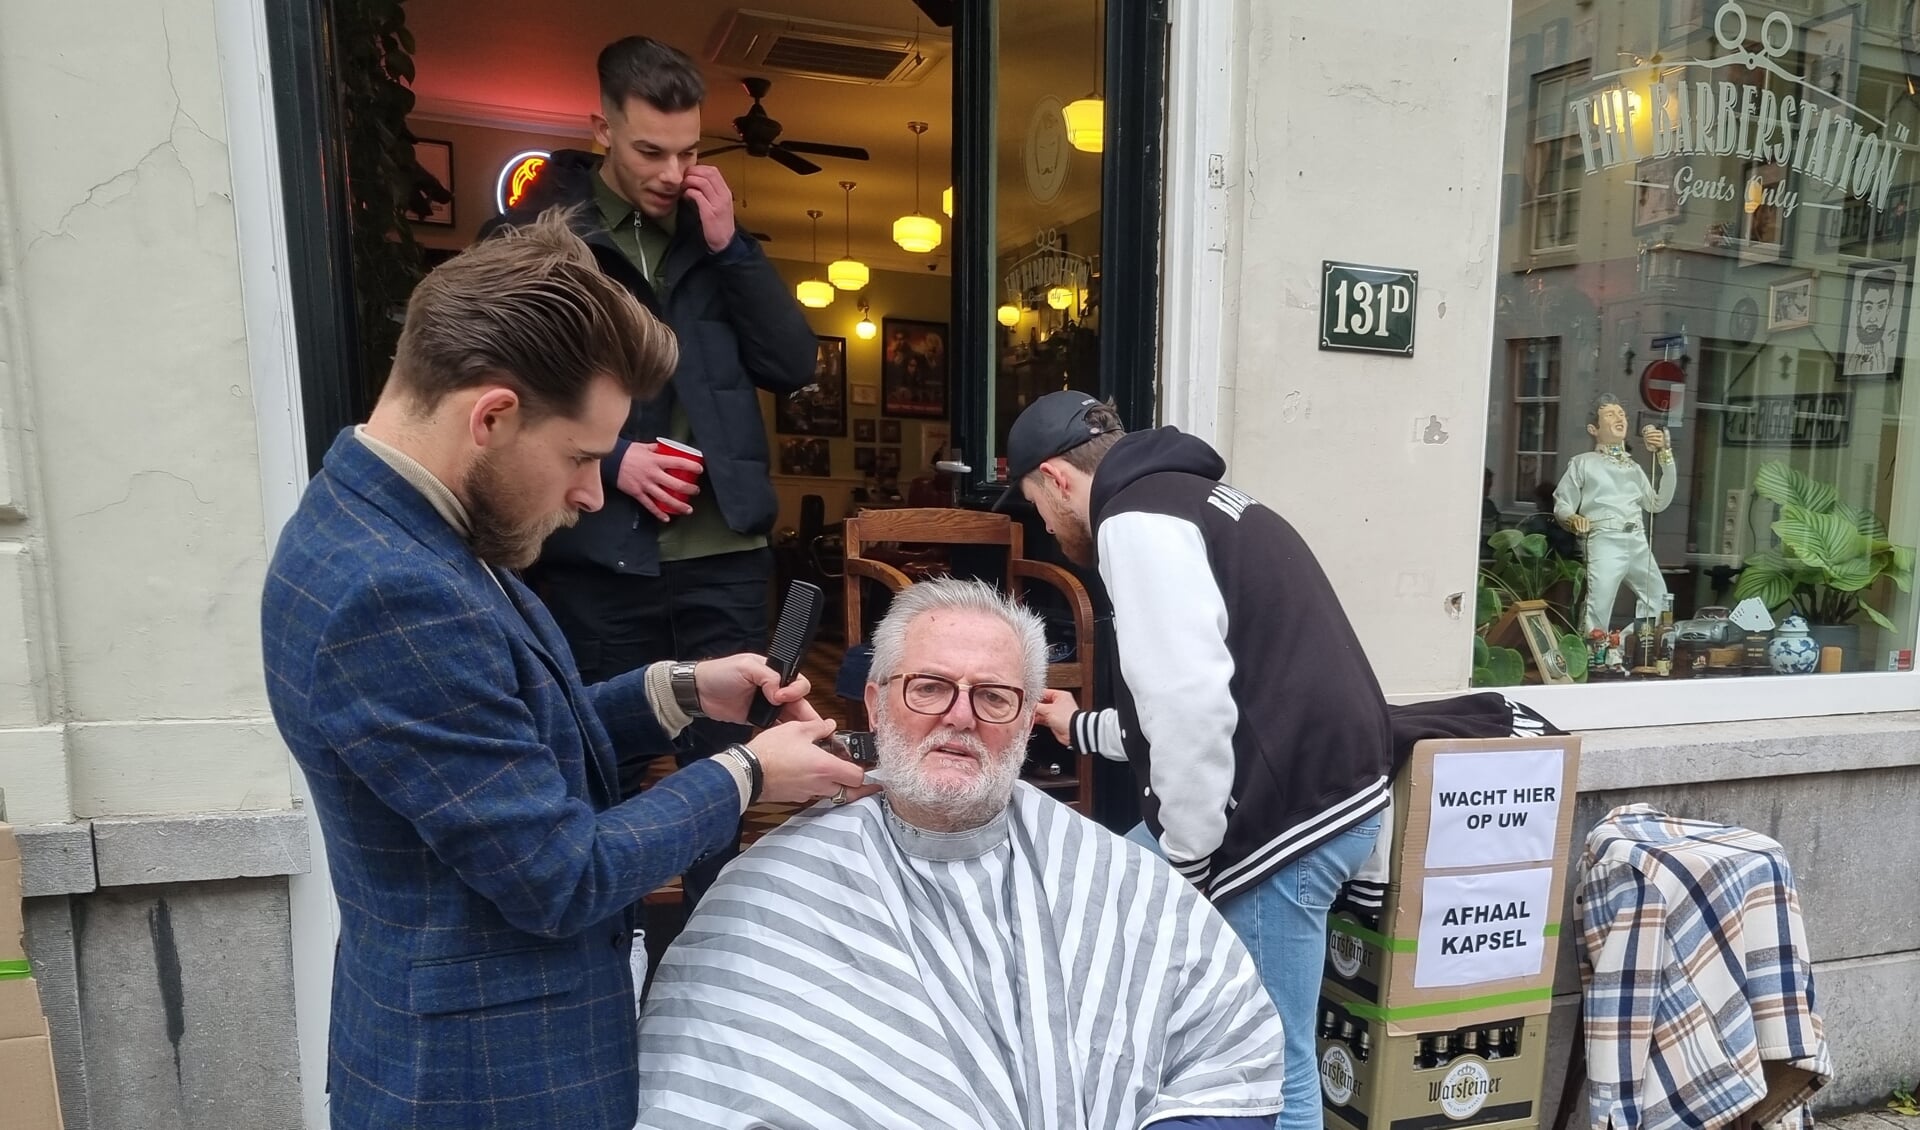 Ook onze huisfotograaf Henk van Esch werd vrijdag op de stoep voor The Barberstation getrakteerd op een gratis knip- en scheerbeurt.